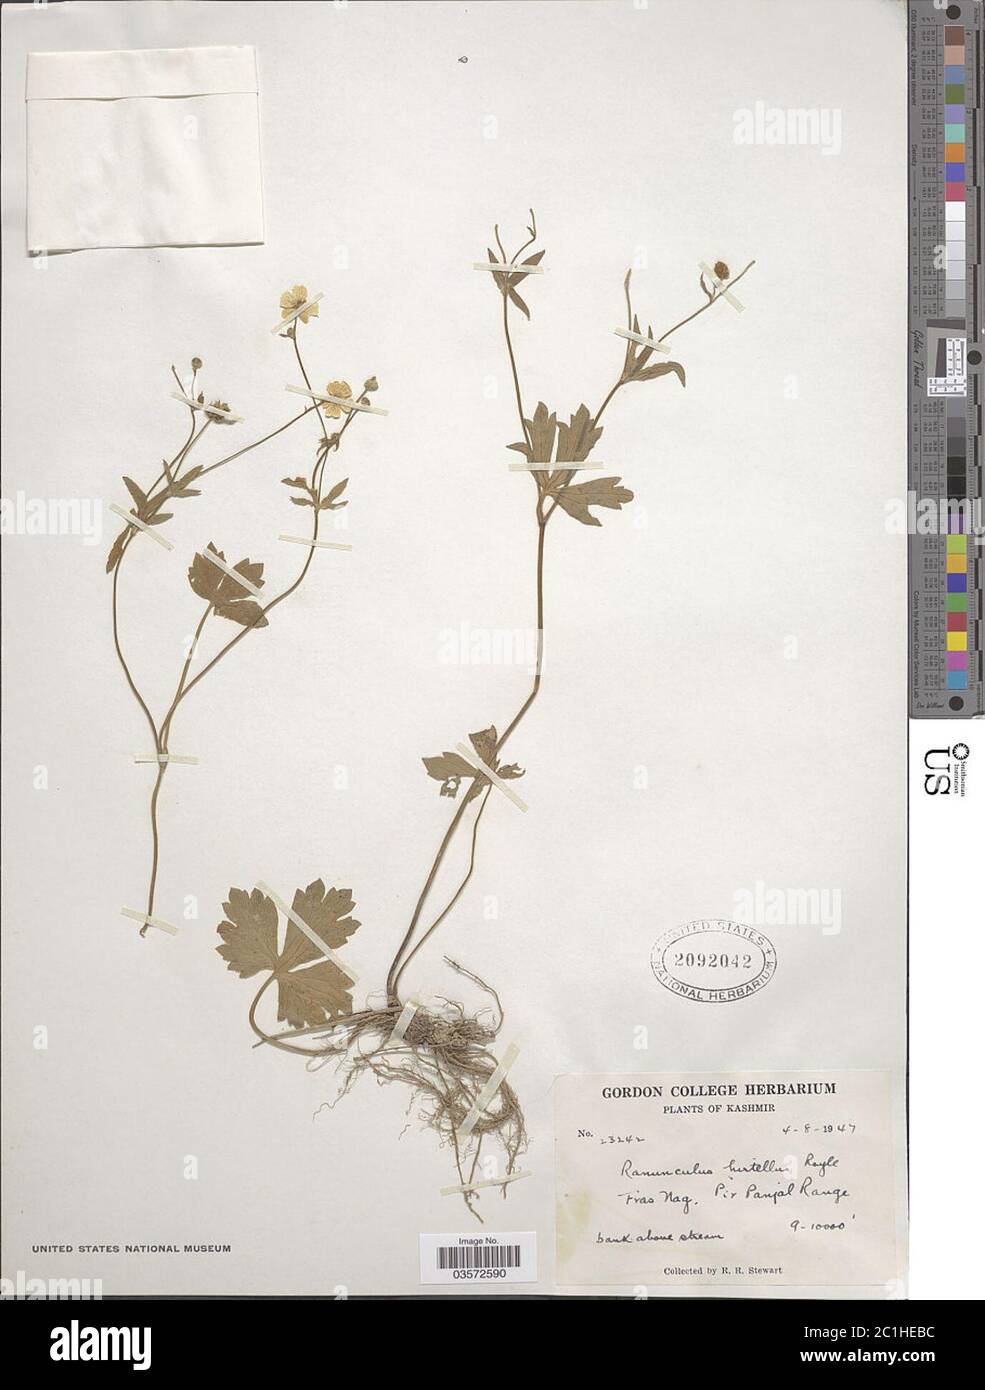 Ranunculus hirtellus Royle Ranunculus hirtellus Royle. Stock Photo